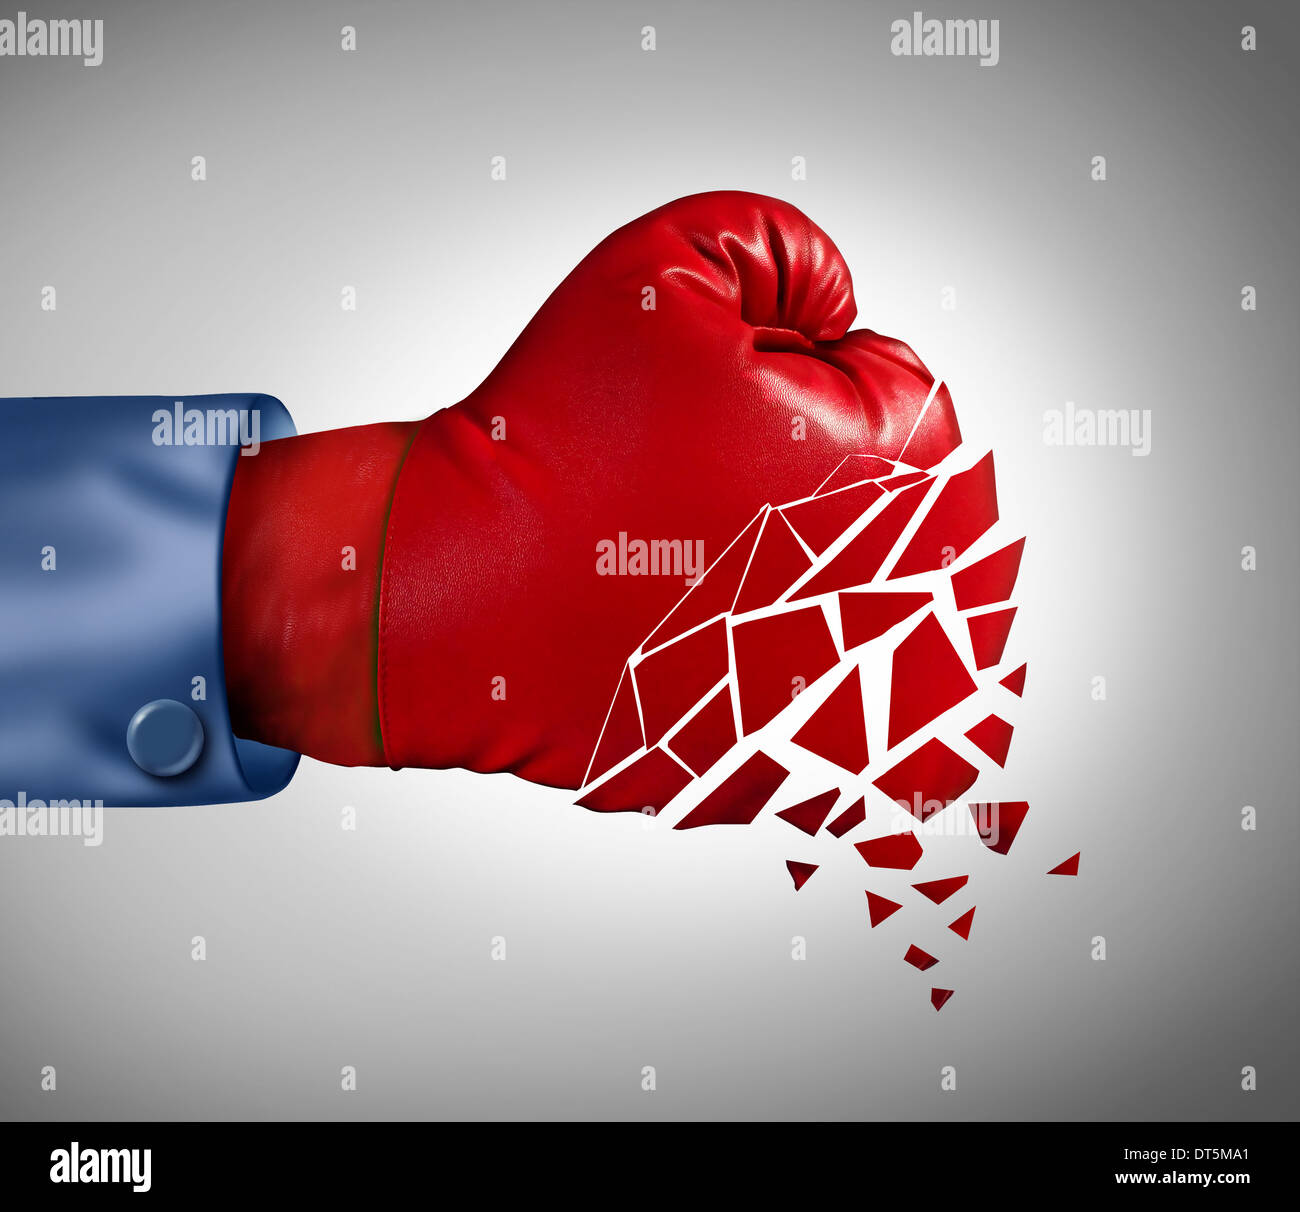 Gescheiterten Strategie Geschäftskonzept mit rote Boxhandschuh zerfallen als Metapher für den Verlust der Kampfgeist und Zusammenbruch Stockfoto